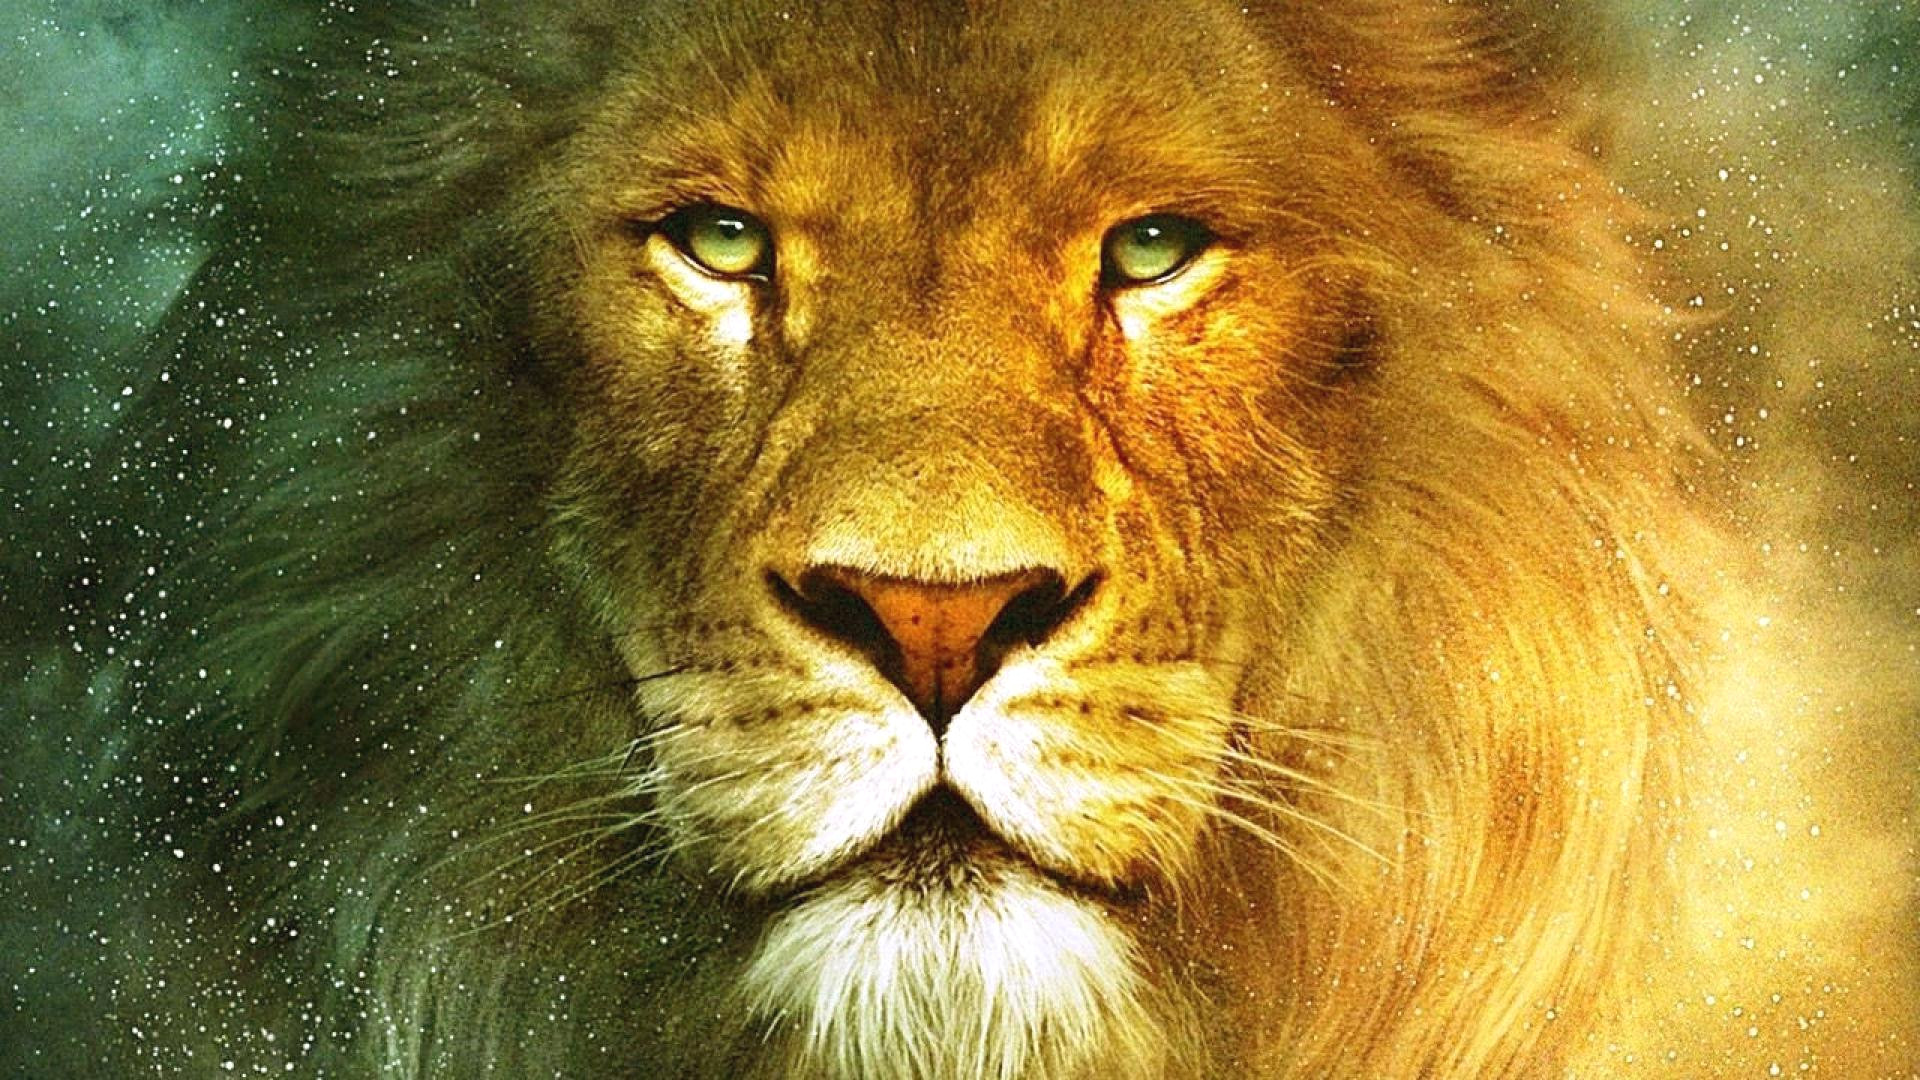 fondos de pantalla hd para pc,león,fauna silvestre,masai lion,cabello,felidae